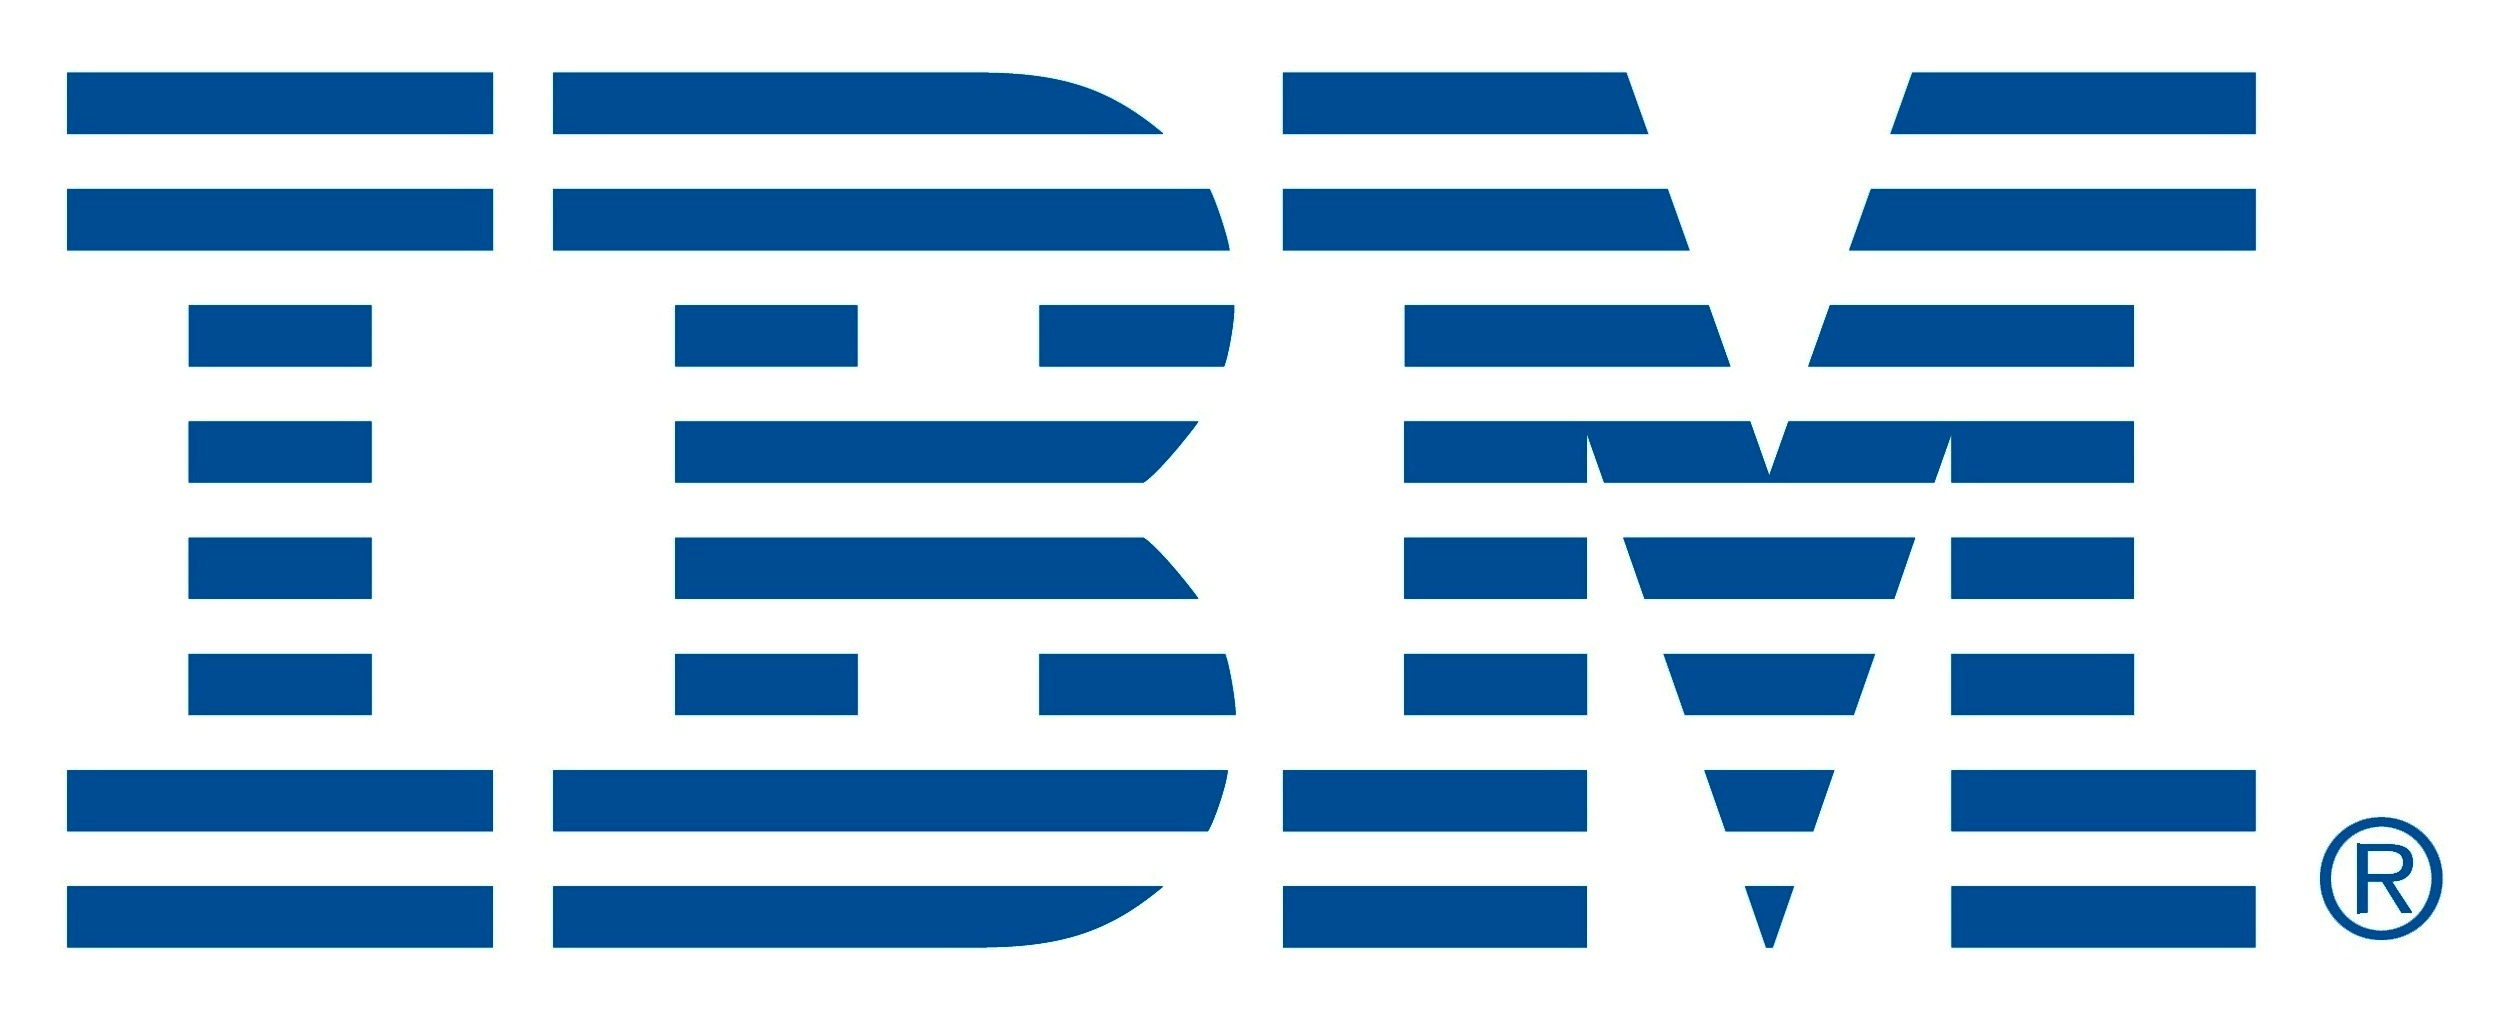 Ibm Of Hard Drives Logo History PNG Image